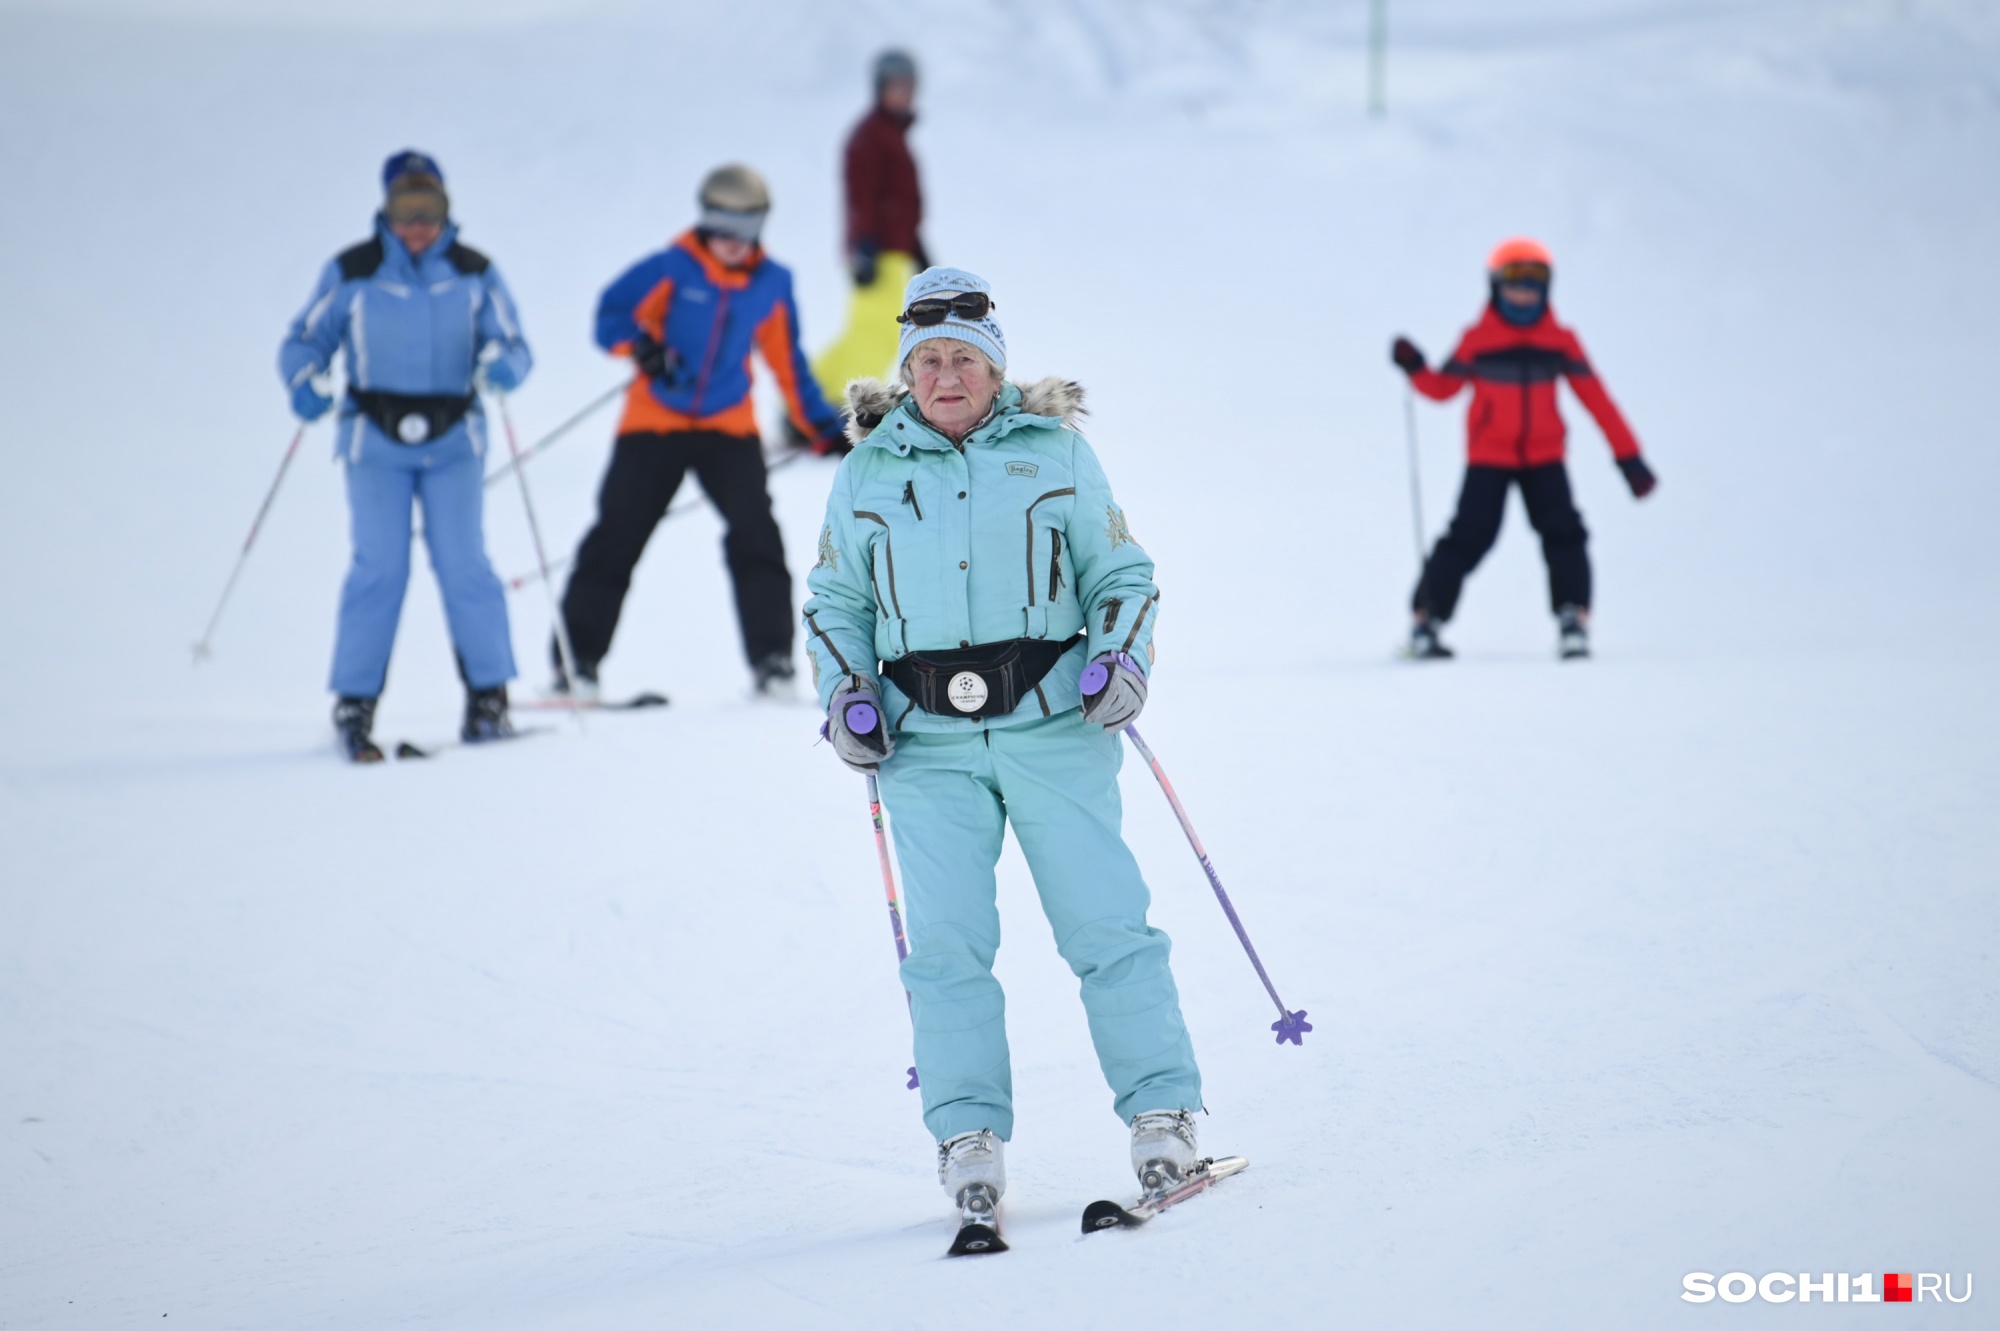 Лыжам все возрасты покорны